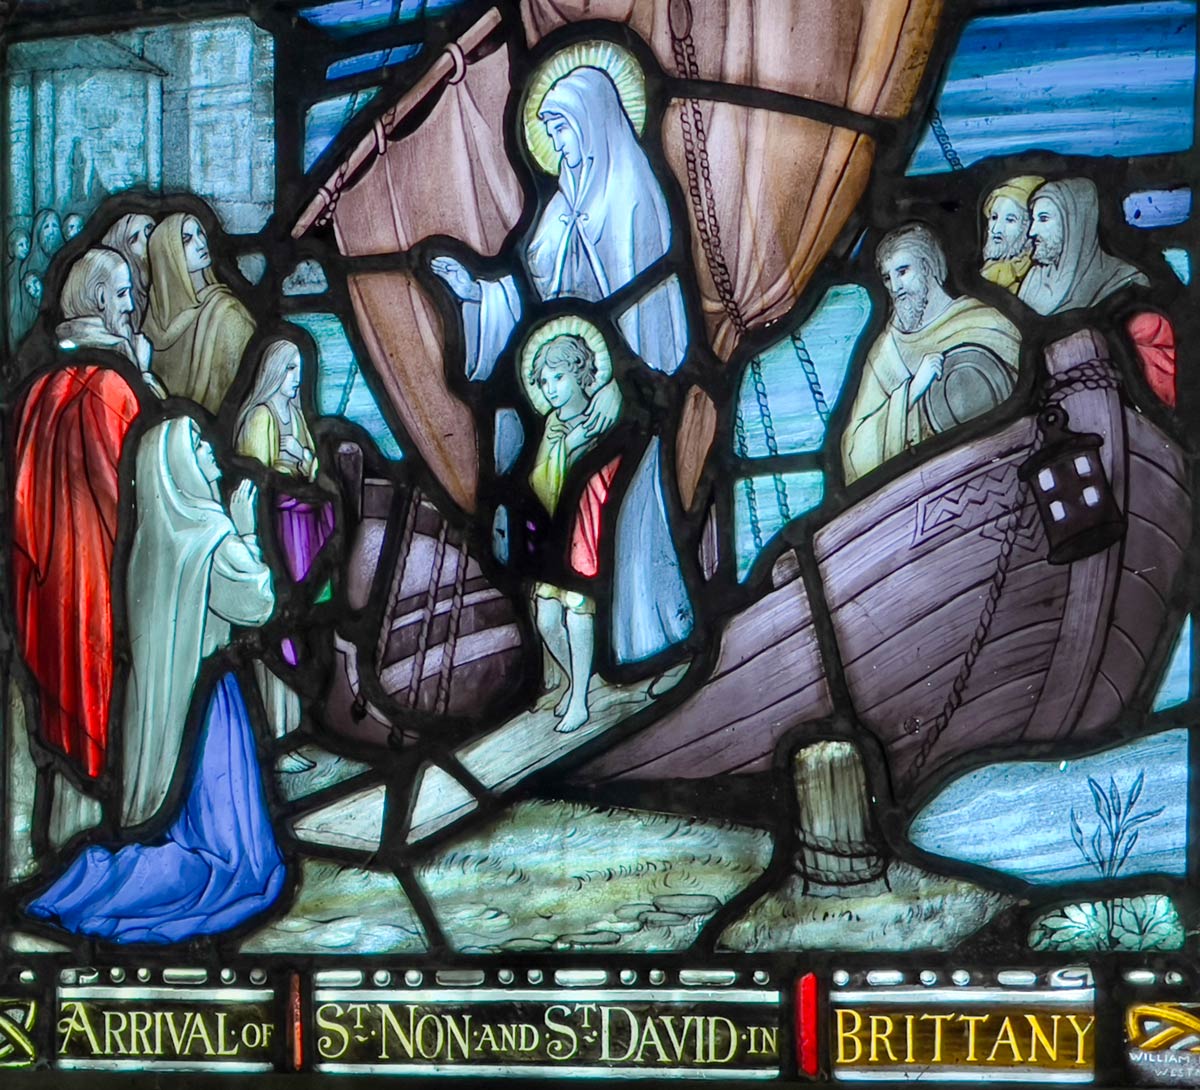 St Non ve St David'in Brittany, St Non's Chapel, St David's'e gelişini gösteren vitray pencere